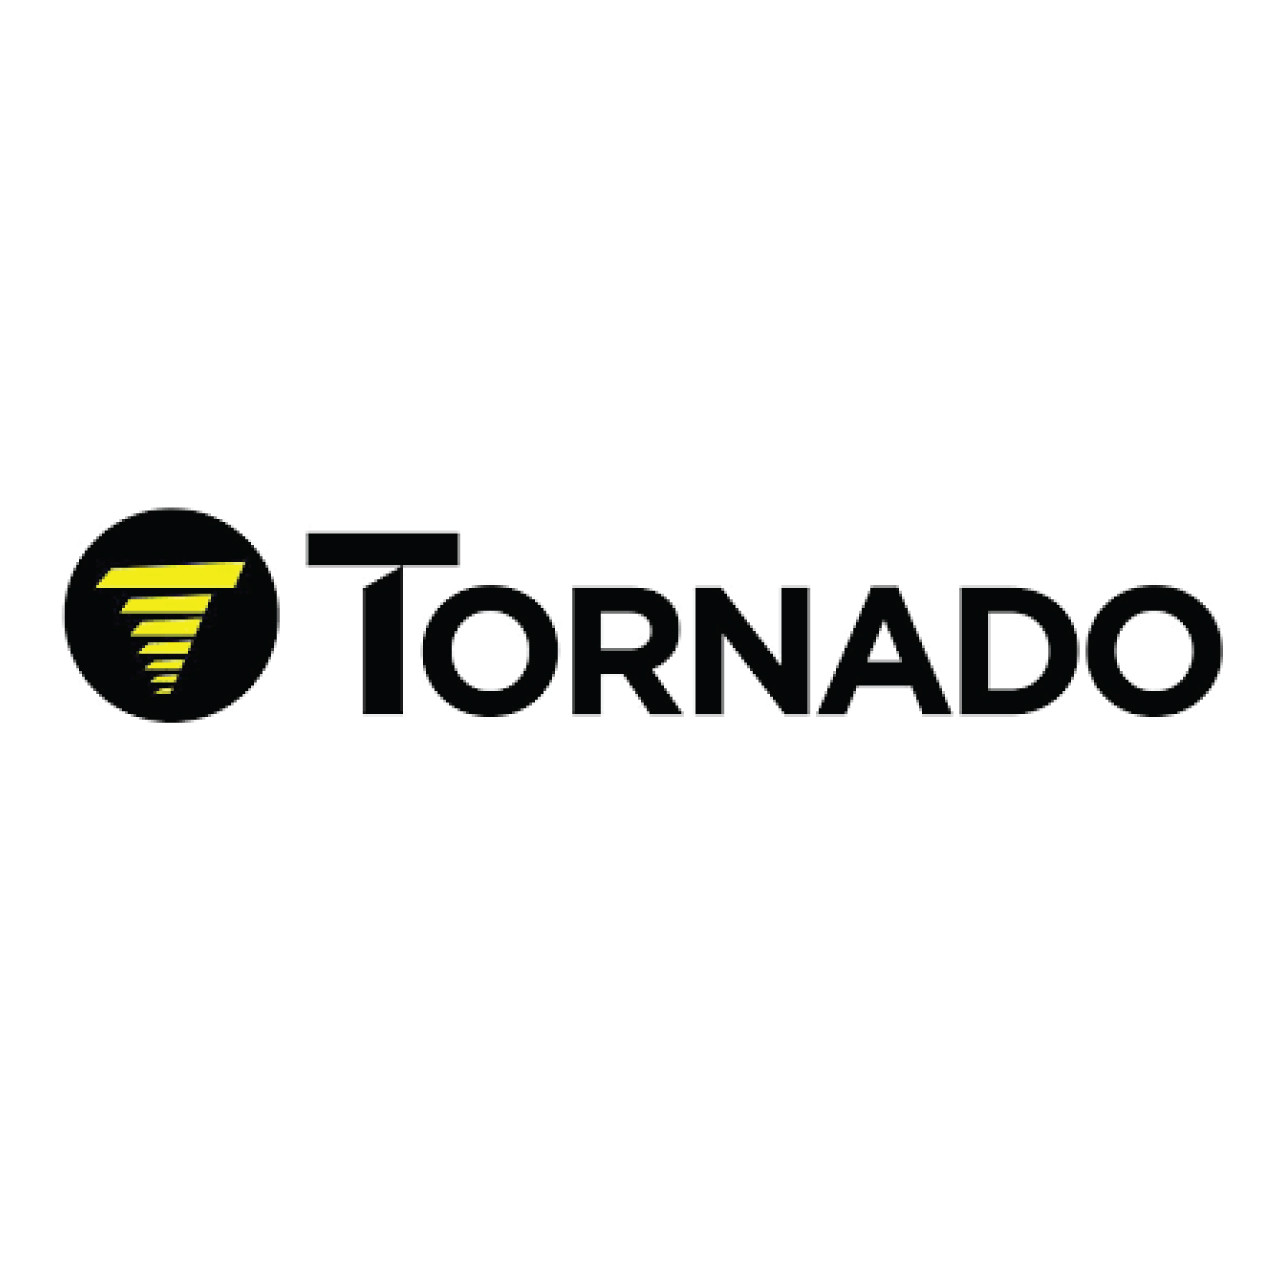 2962, Tornado 2962, Tornado CLIP ADAPTER STRAIN RELIEF, Tornado parts